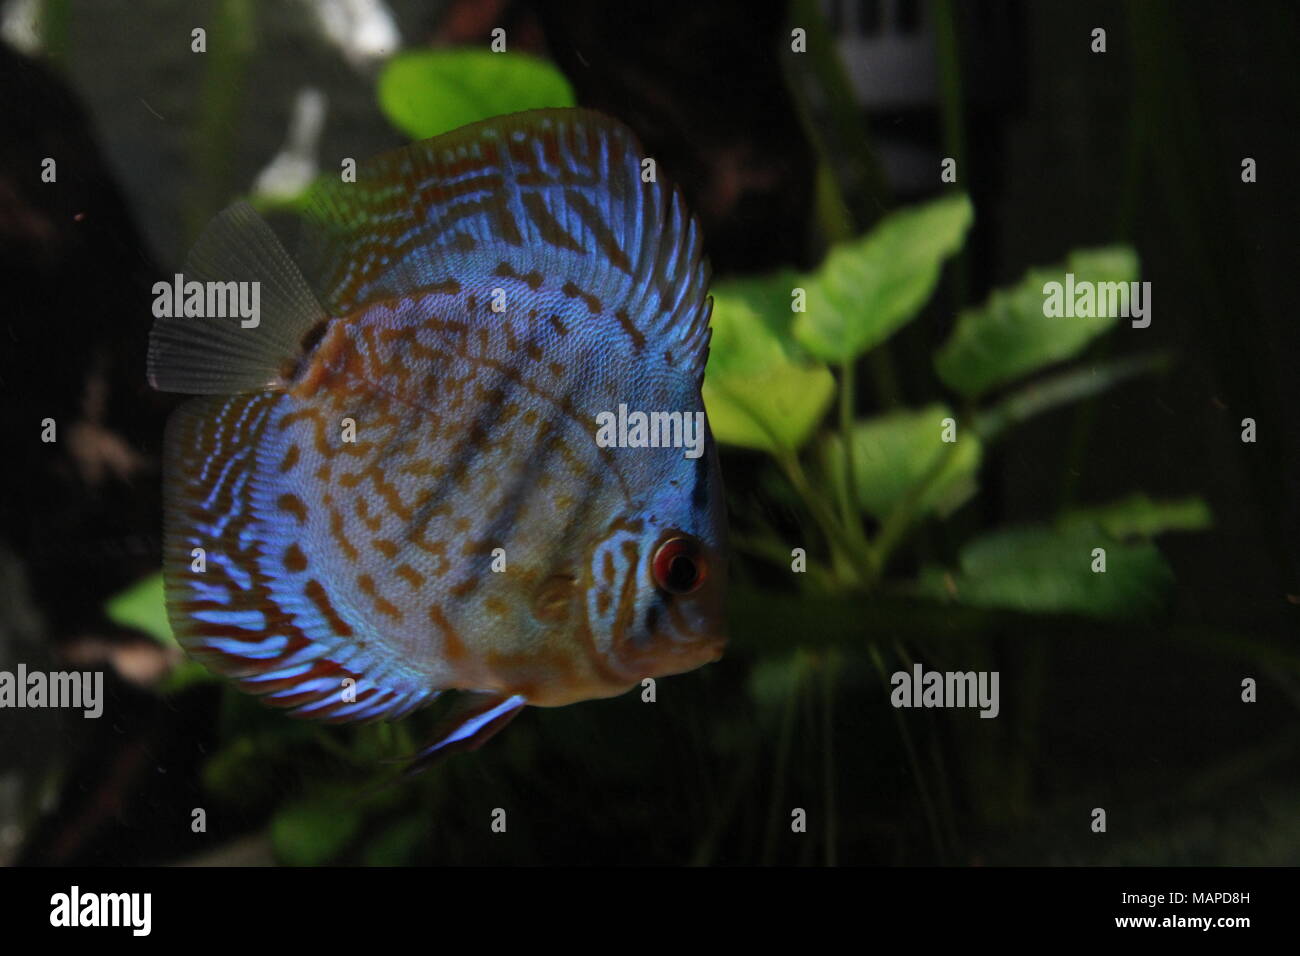 Blue Discus Fish in Tropical Freshwater aquarium Stock Photo